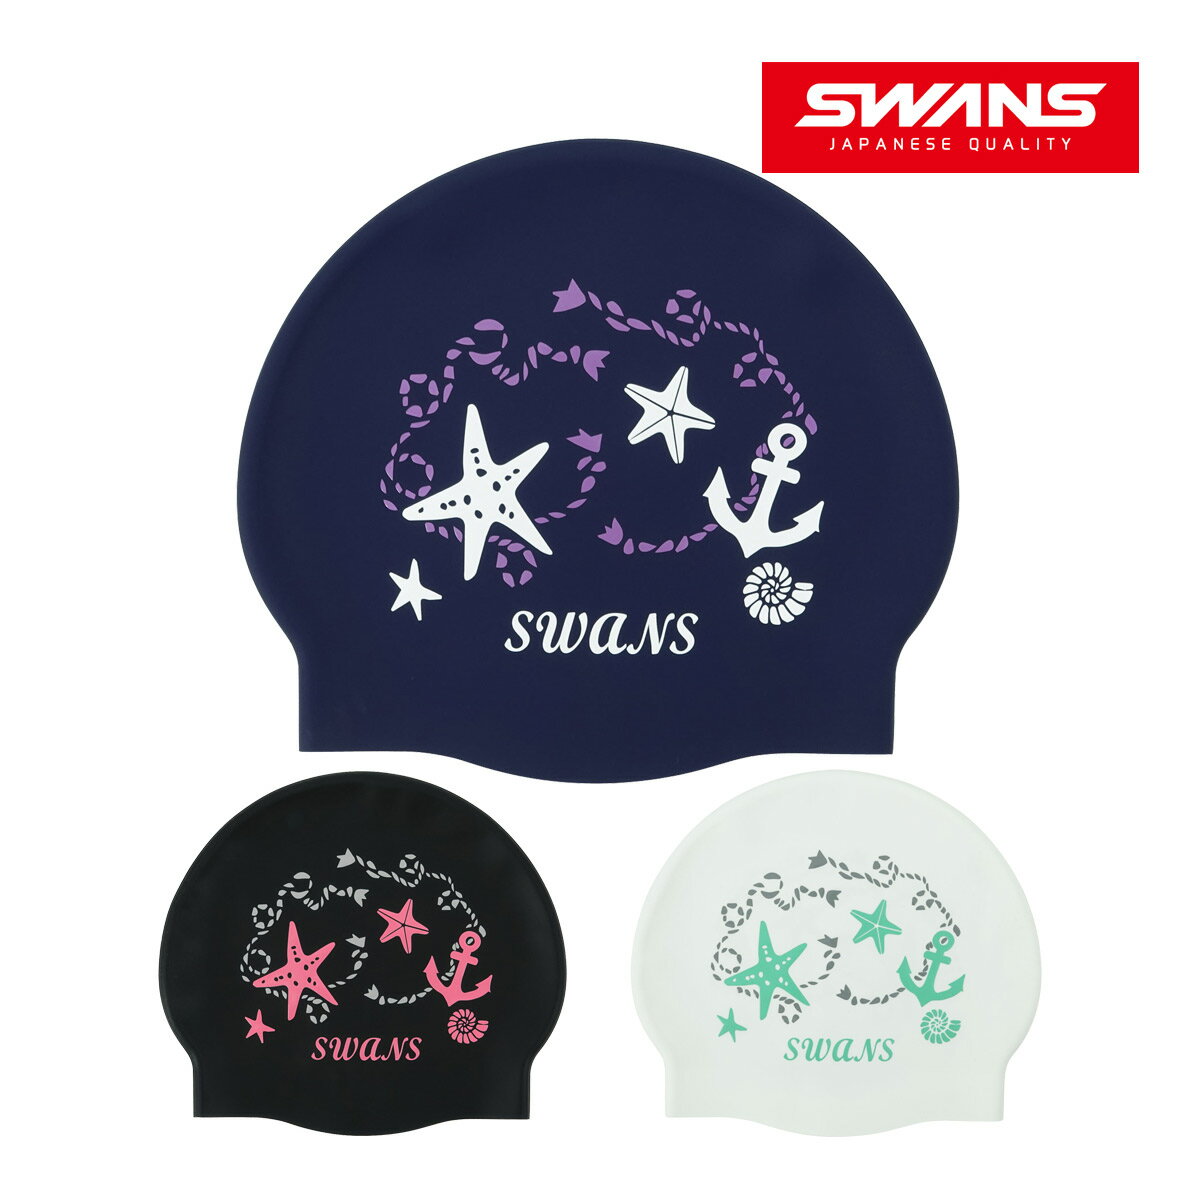 水泳帽子 シリコンキャップ マリン スイムキャップ 大人 かわいい 日本製 競泳 Fina承認モデル スイミングキャップ スワンズ SWANS